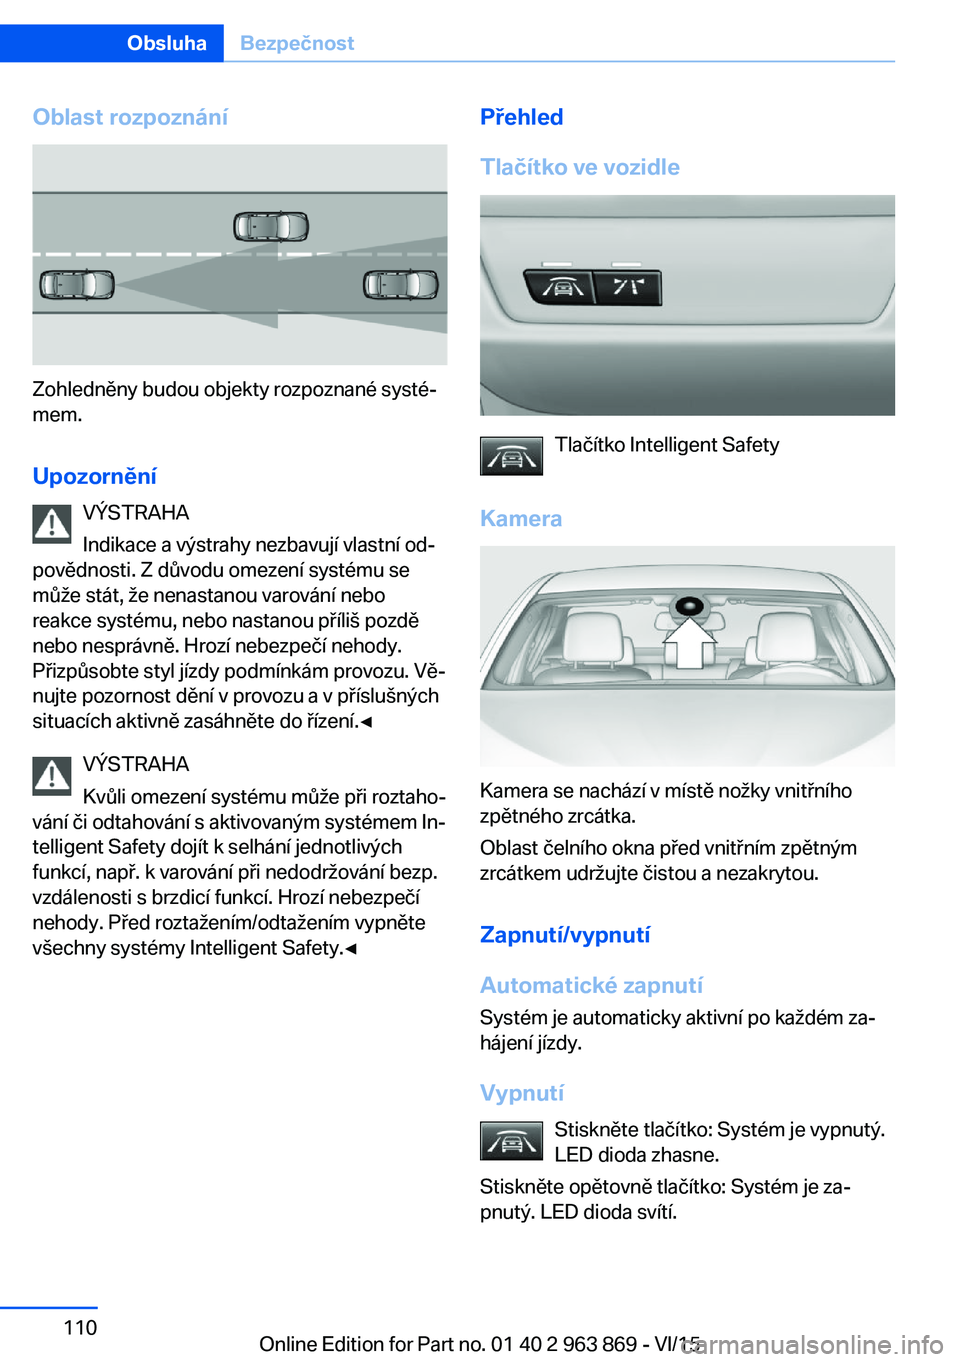 BMW 2 SERIES COUPE 2016  Návod na použití (in Czech) Oblast rozpoznání
Zohledněny budou objekty rozpoznané systé‐
mem.
Upozornění VÝSTRAHA
Indikace a výstrahy nezbavují vlastní od‐
povědnosti. Z důvodu omezení systému se
může stát,